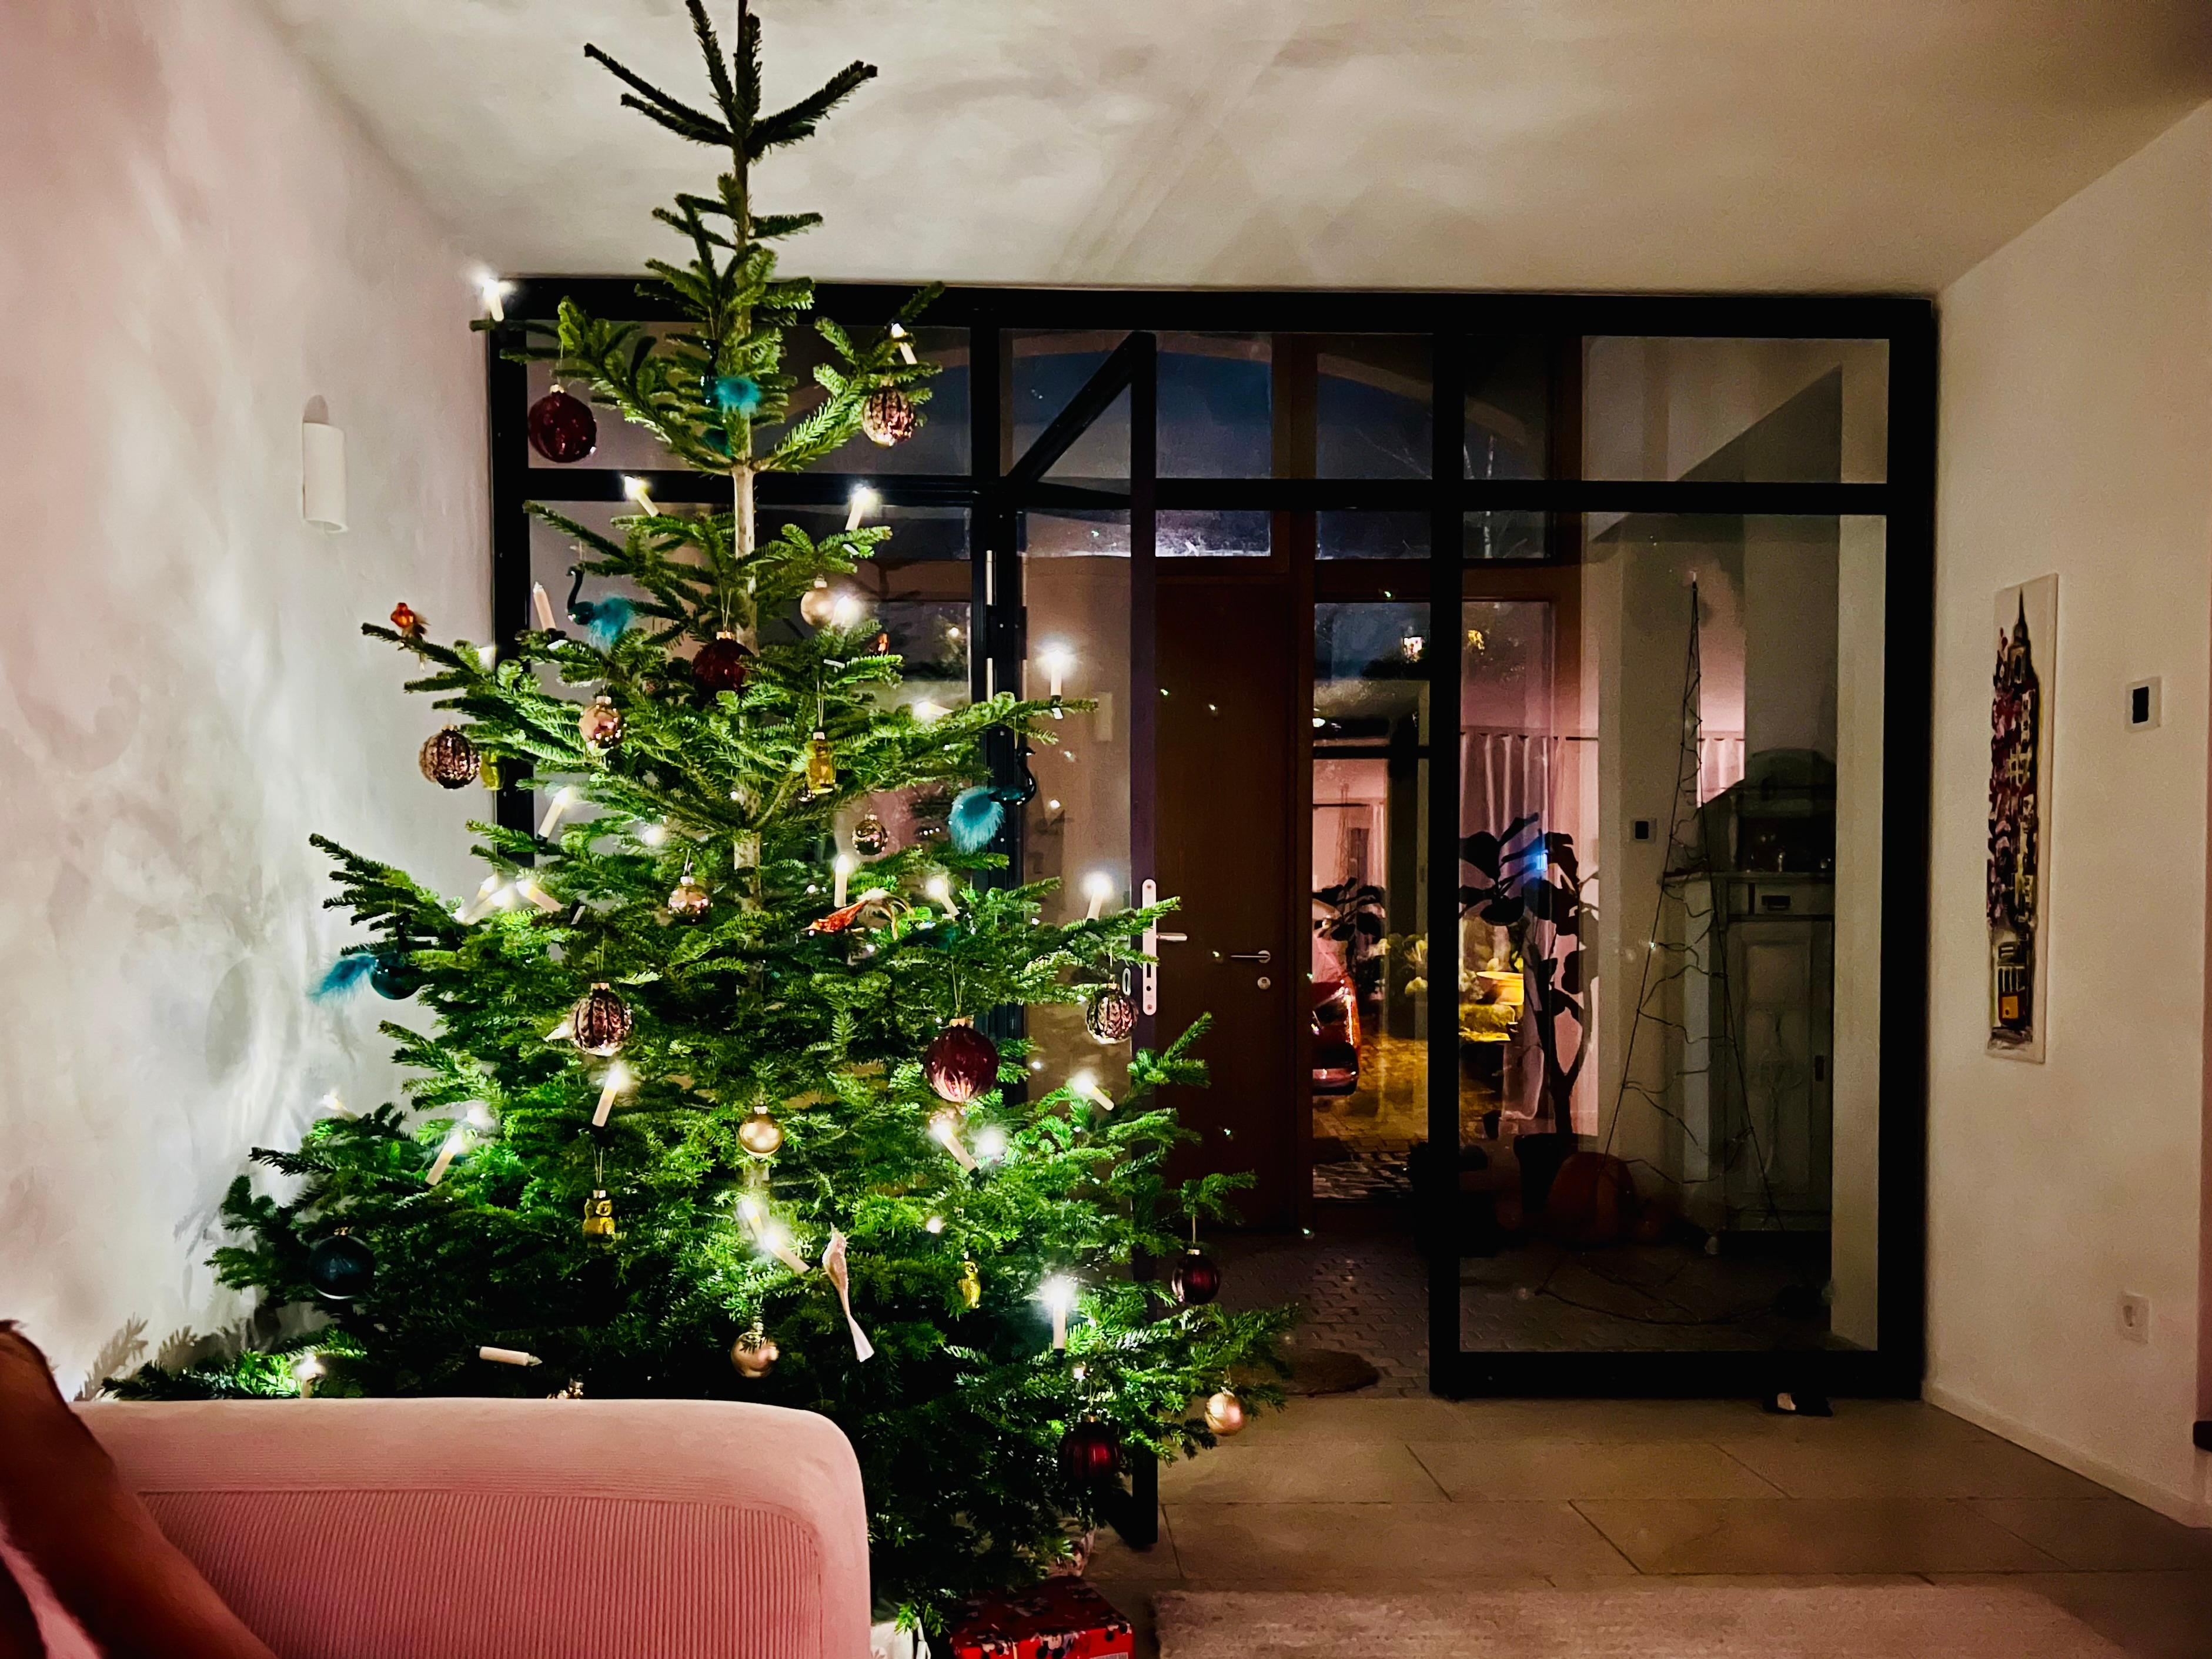 Der Weihnachtsbaum steht ... der Heilige Abend kann kommen 
#weihnachtsbaum #weihachtsdeko #weihnachten #christmas #tannenbaum